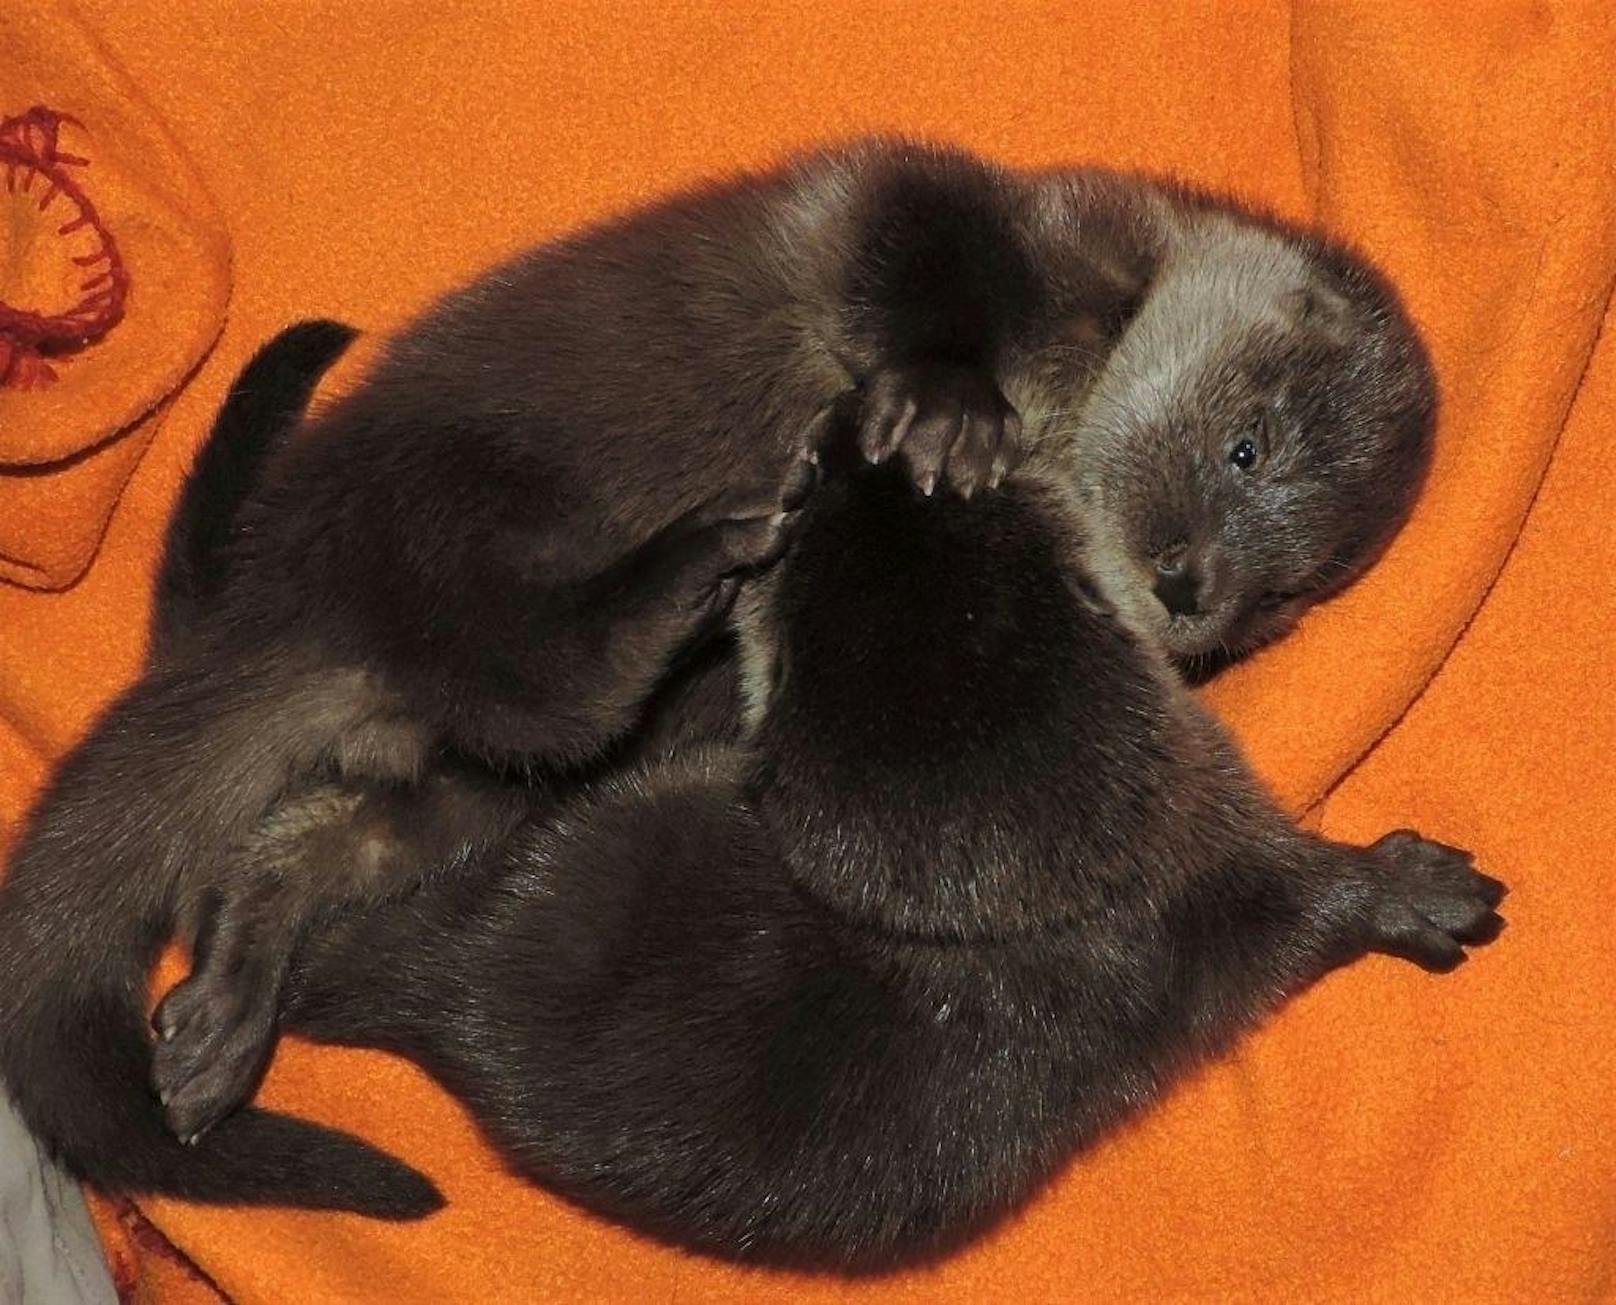 Tierpfleger päppeln Otter-Babys auf.